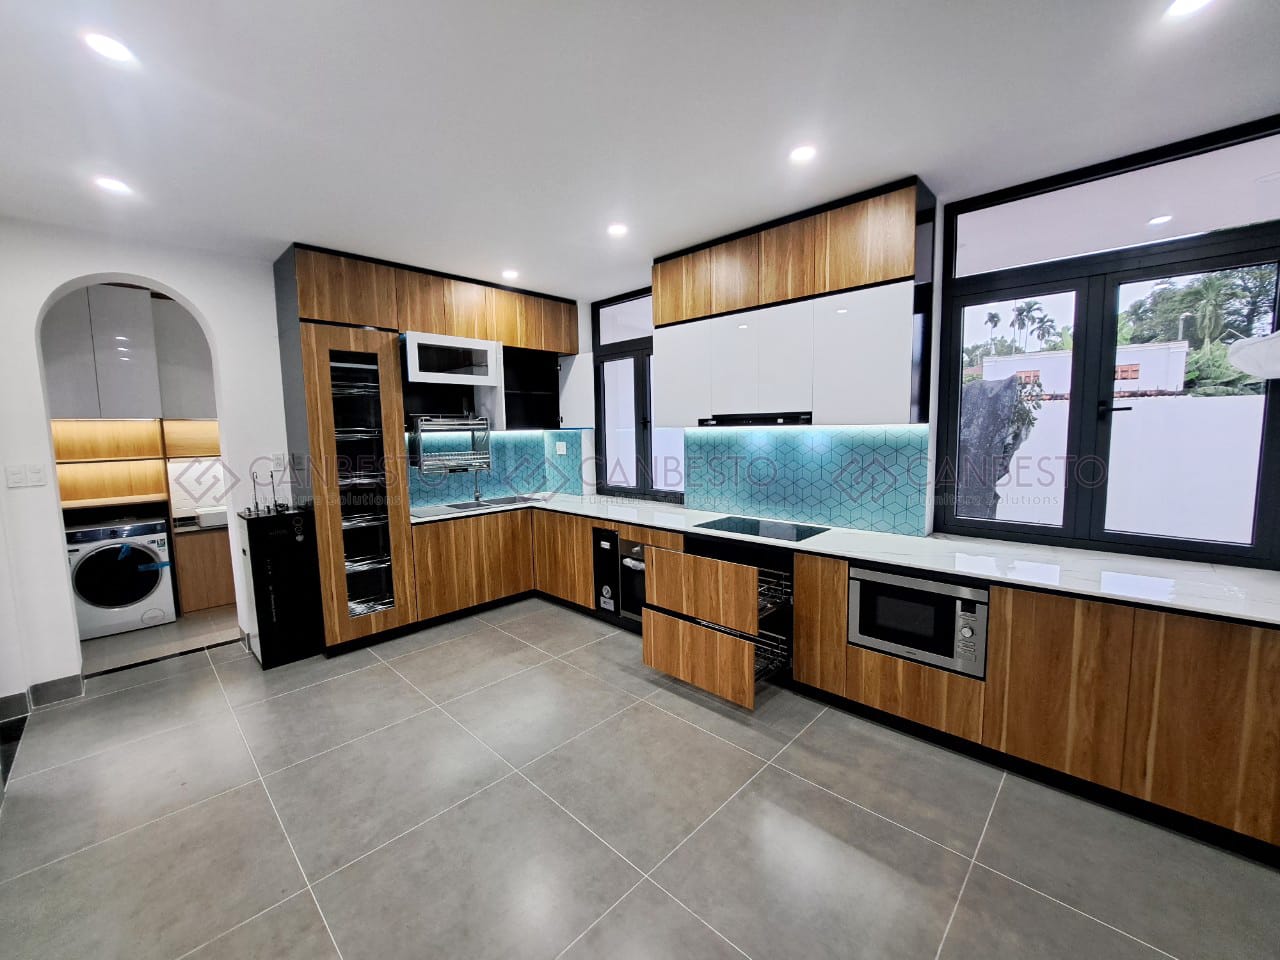 Canbesto: Chuyên thiết kế, thi công nội thất và tủ bếp tại Biên Hòa.